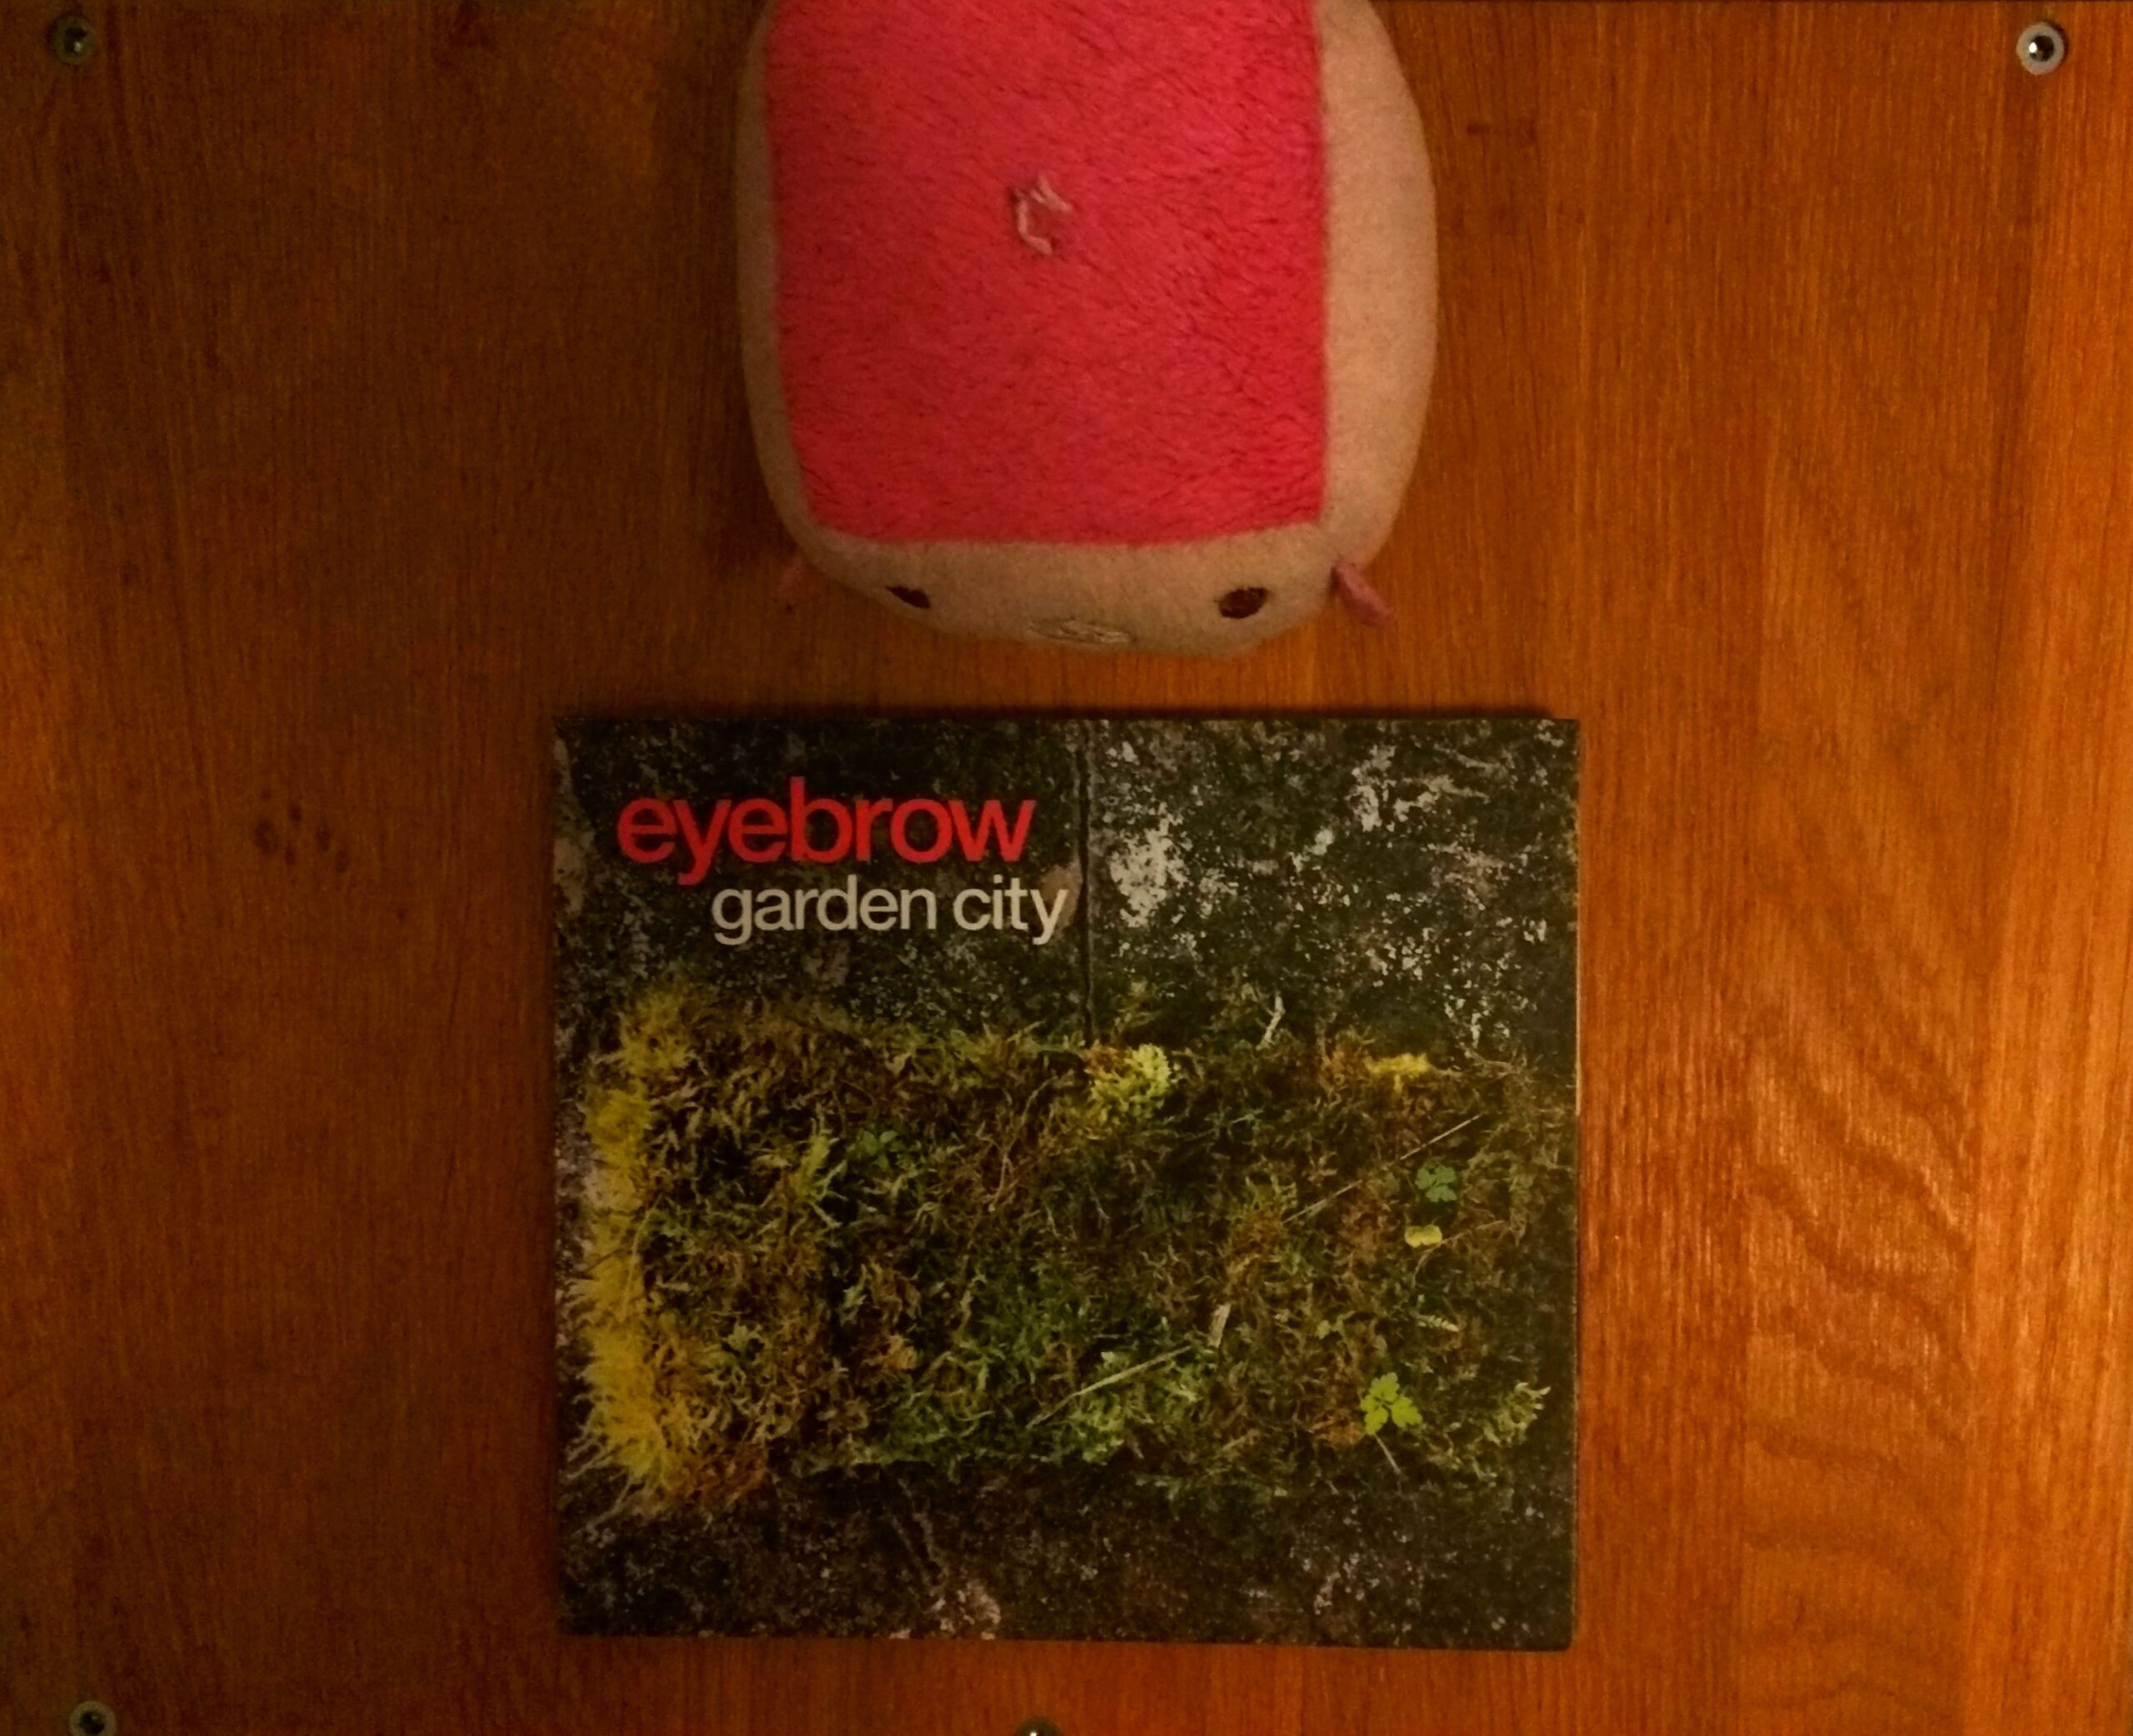 Eyebrow – Garden City